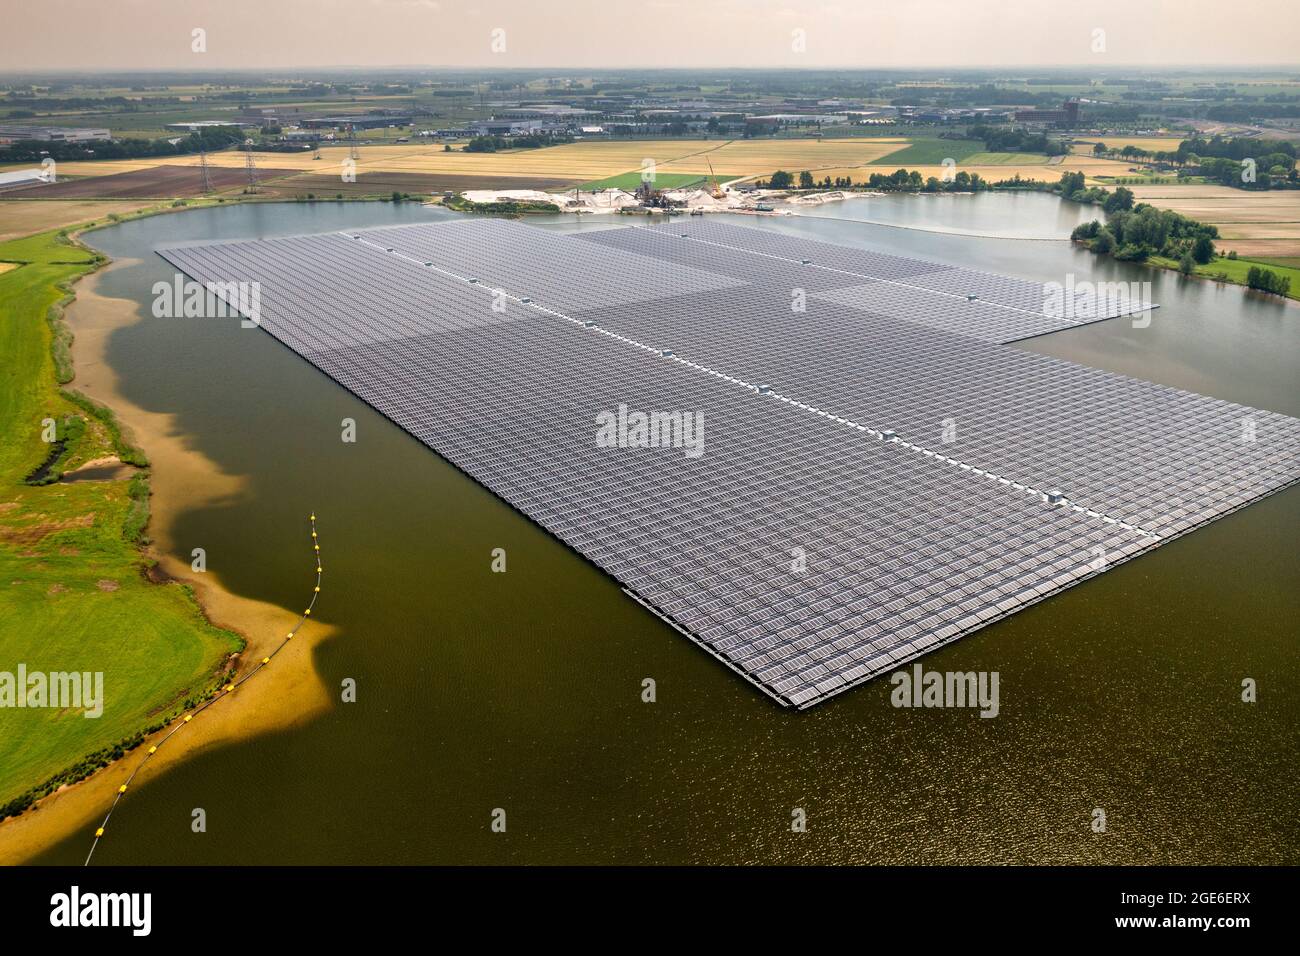 Niederlande, Haerst bei Zwolle, schwimmende Solarzellen im See Bomhofsplas. Antenne. Stockfoto